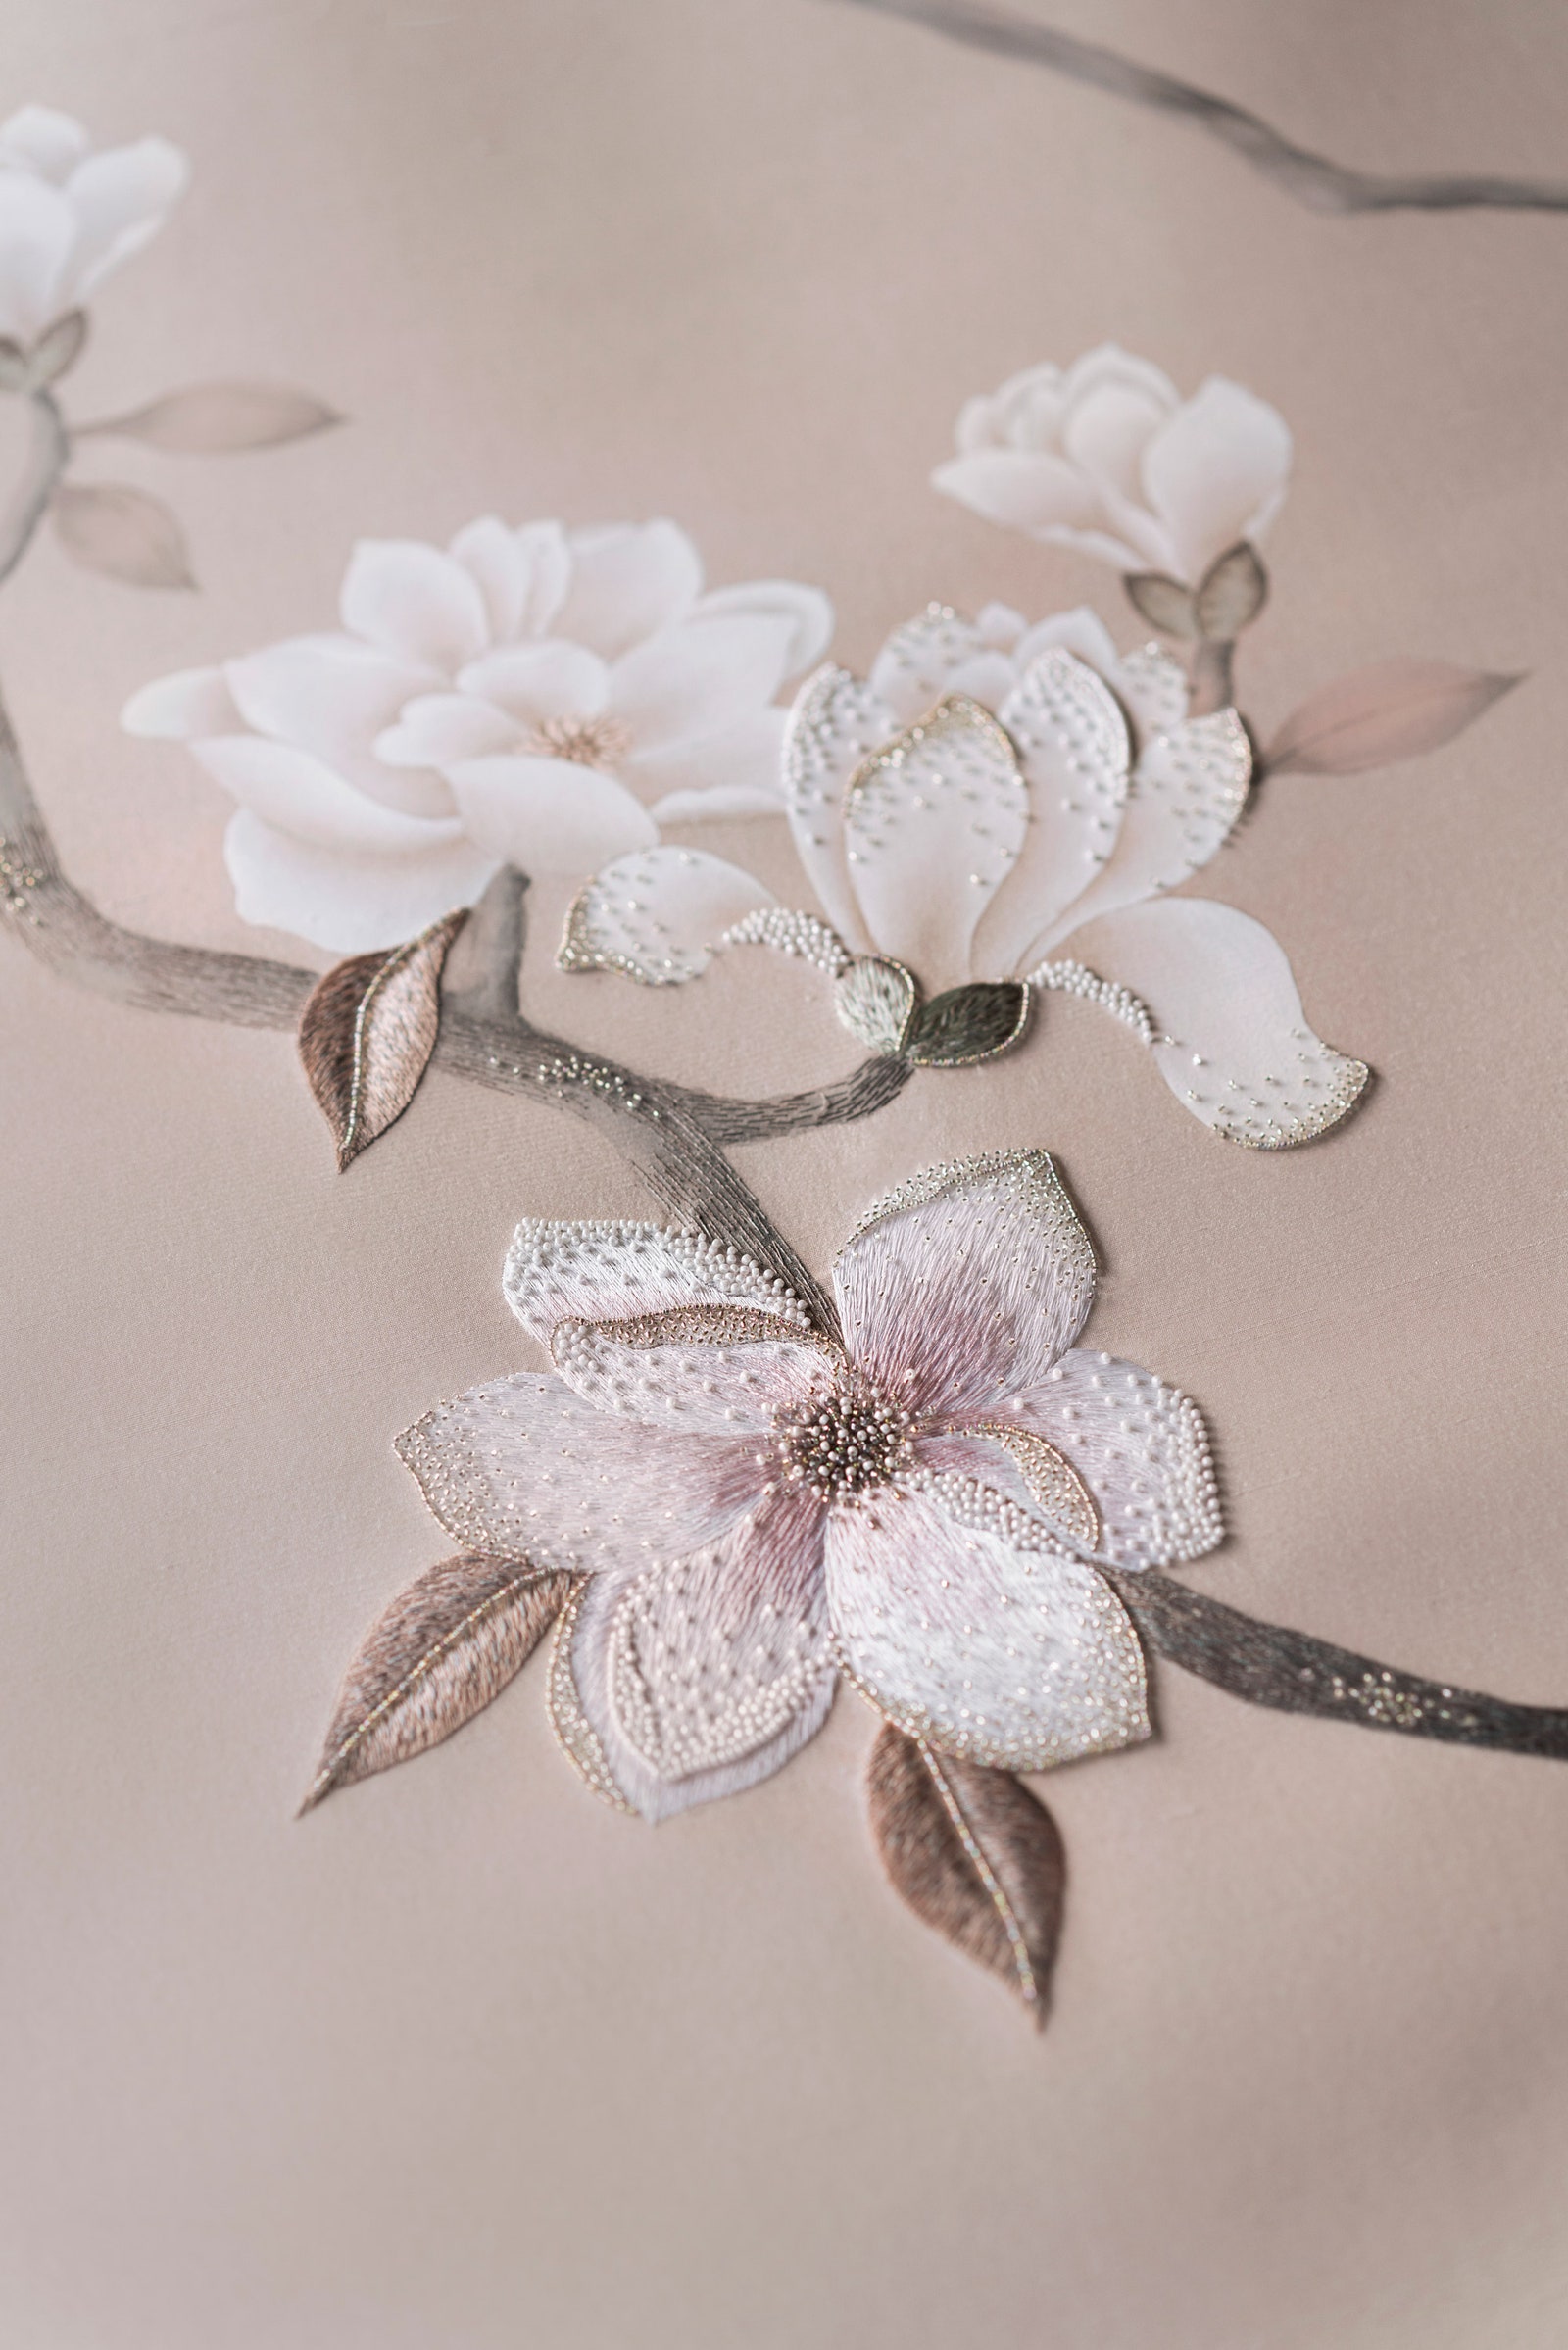 Обои с ручной росписью дизайн Magnolia Canopy с вышивкой de Gournay.